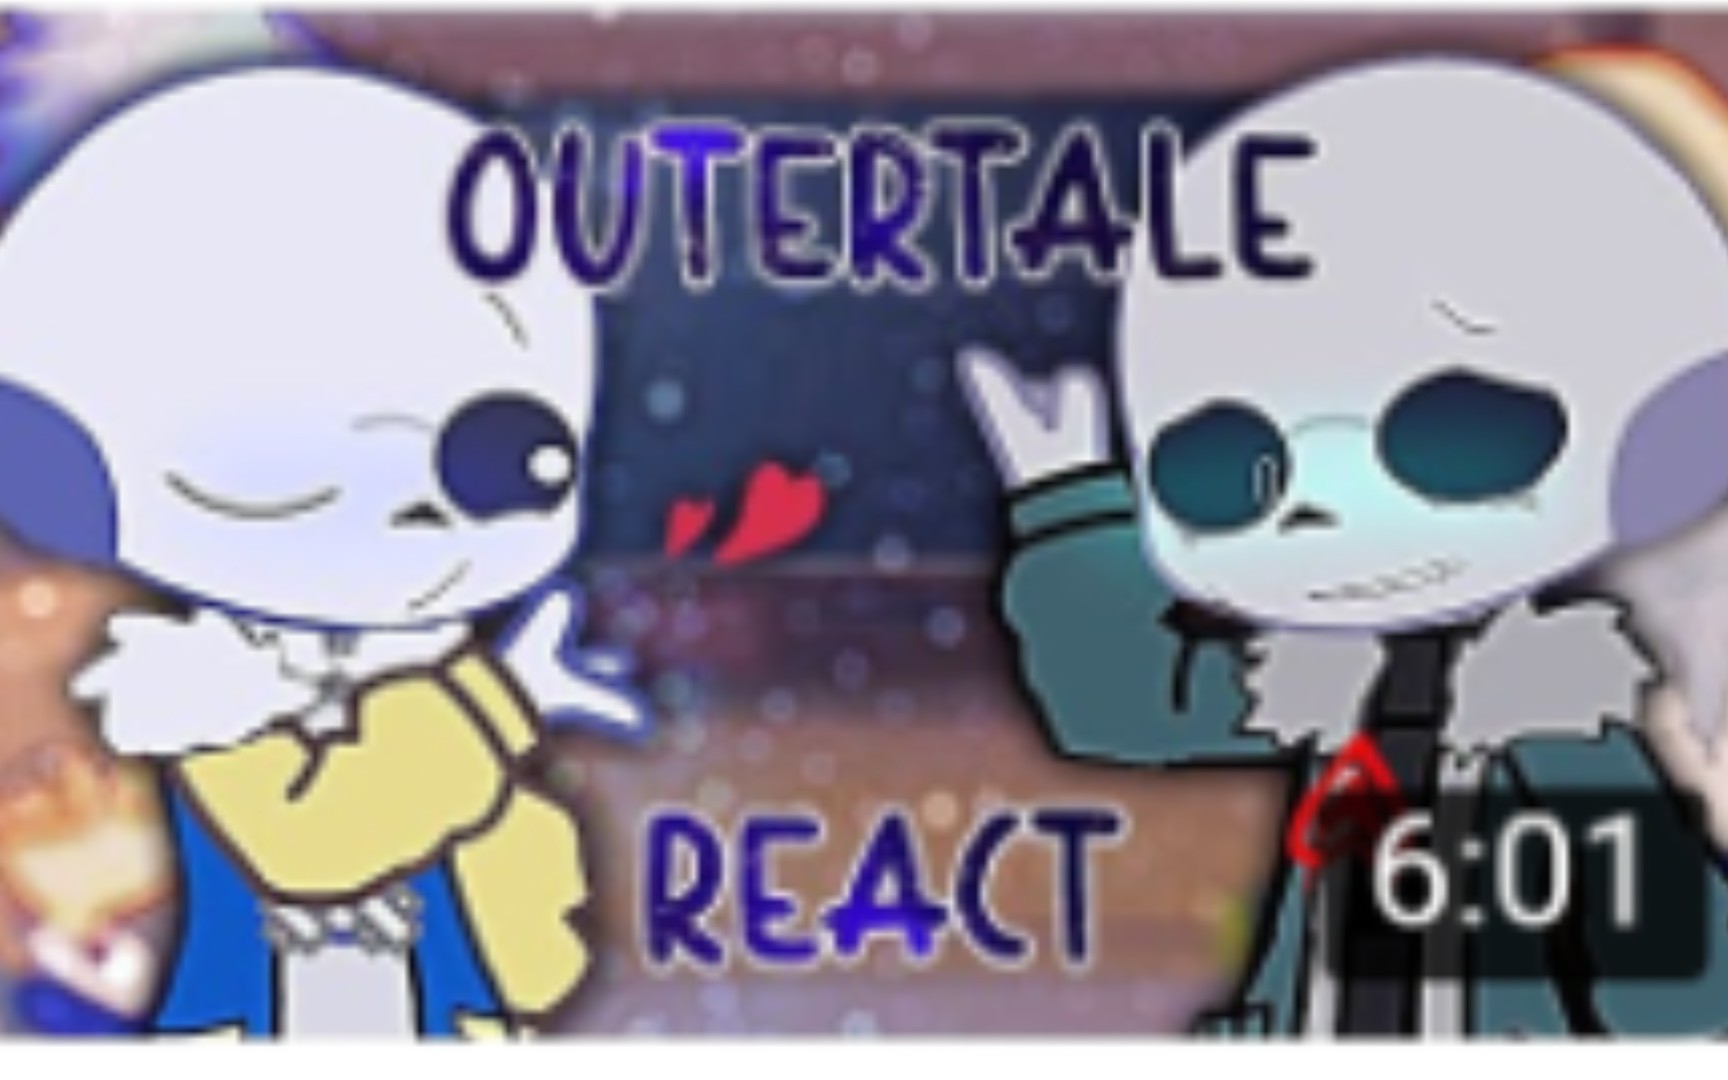 [无授权搬运]Outertale reacts / Read desc / Special 700+ subscribers! 🎉